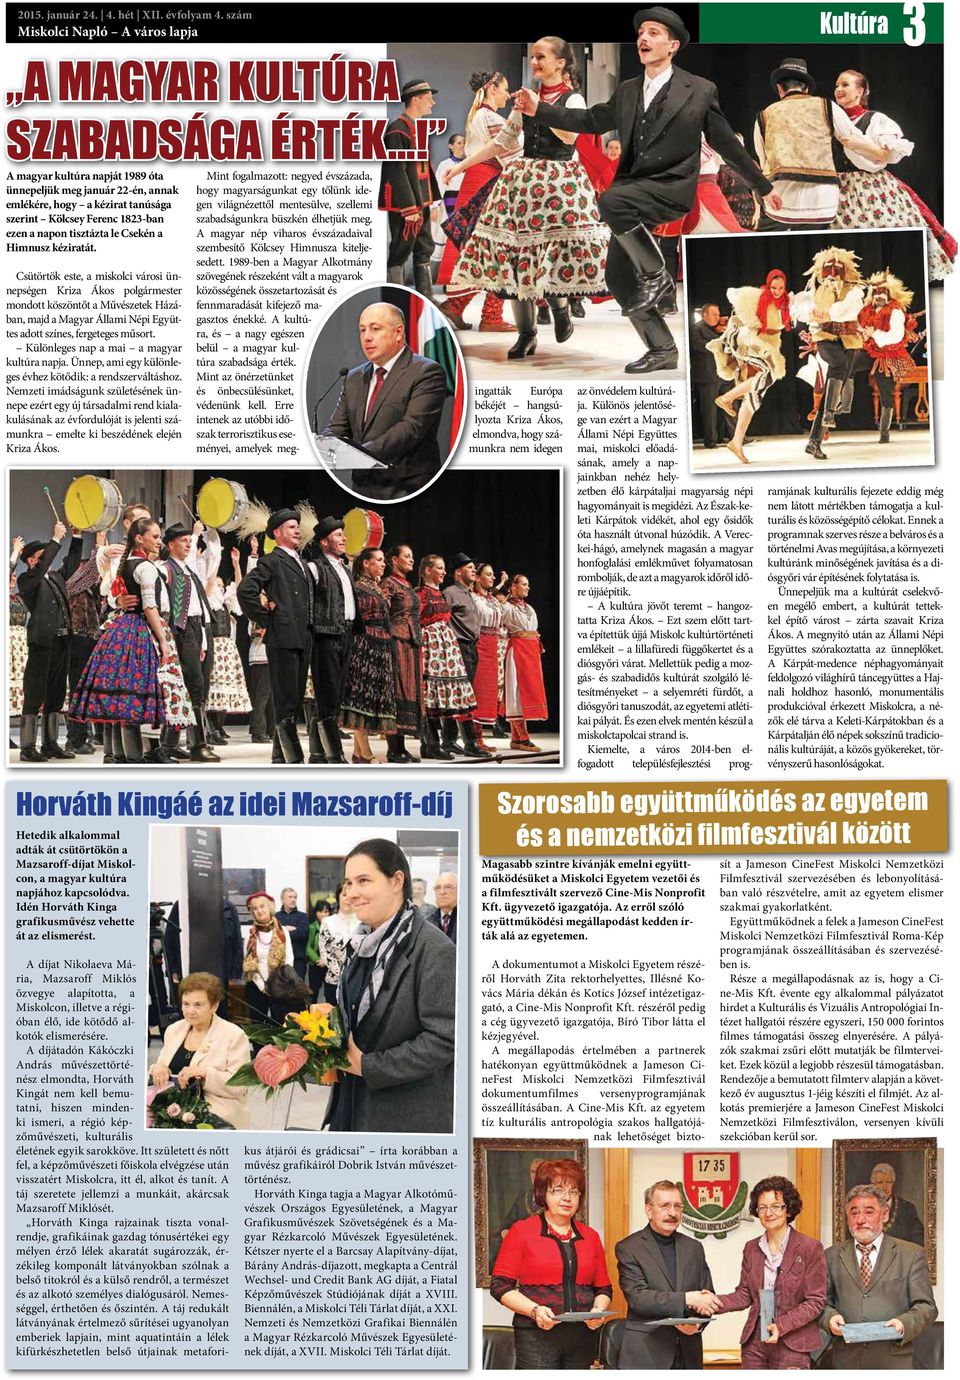 Csütörtök este, a miskolci városi ünnepségen Kriza Ákos polgármester mondott köszöntőt a Művészetek Házában, majd a Magyar Állami Népi Együttes adott színes, fergeteges műsort.